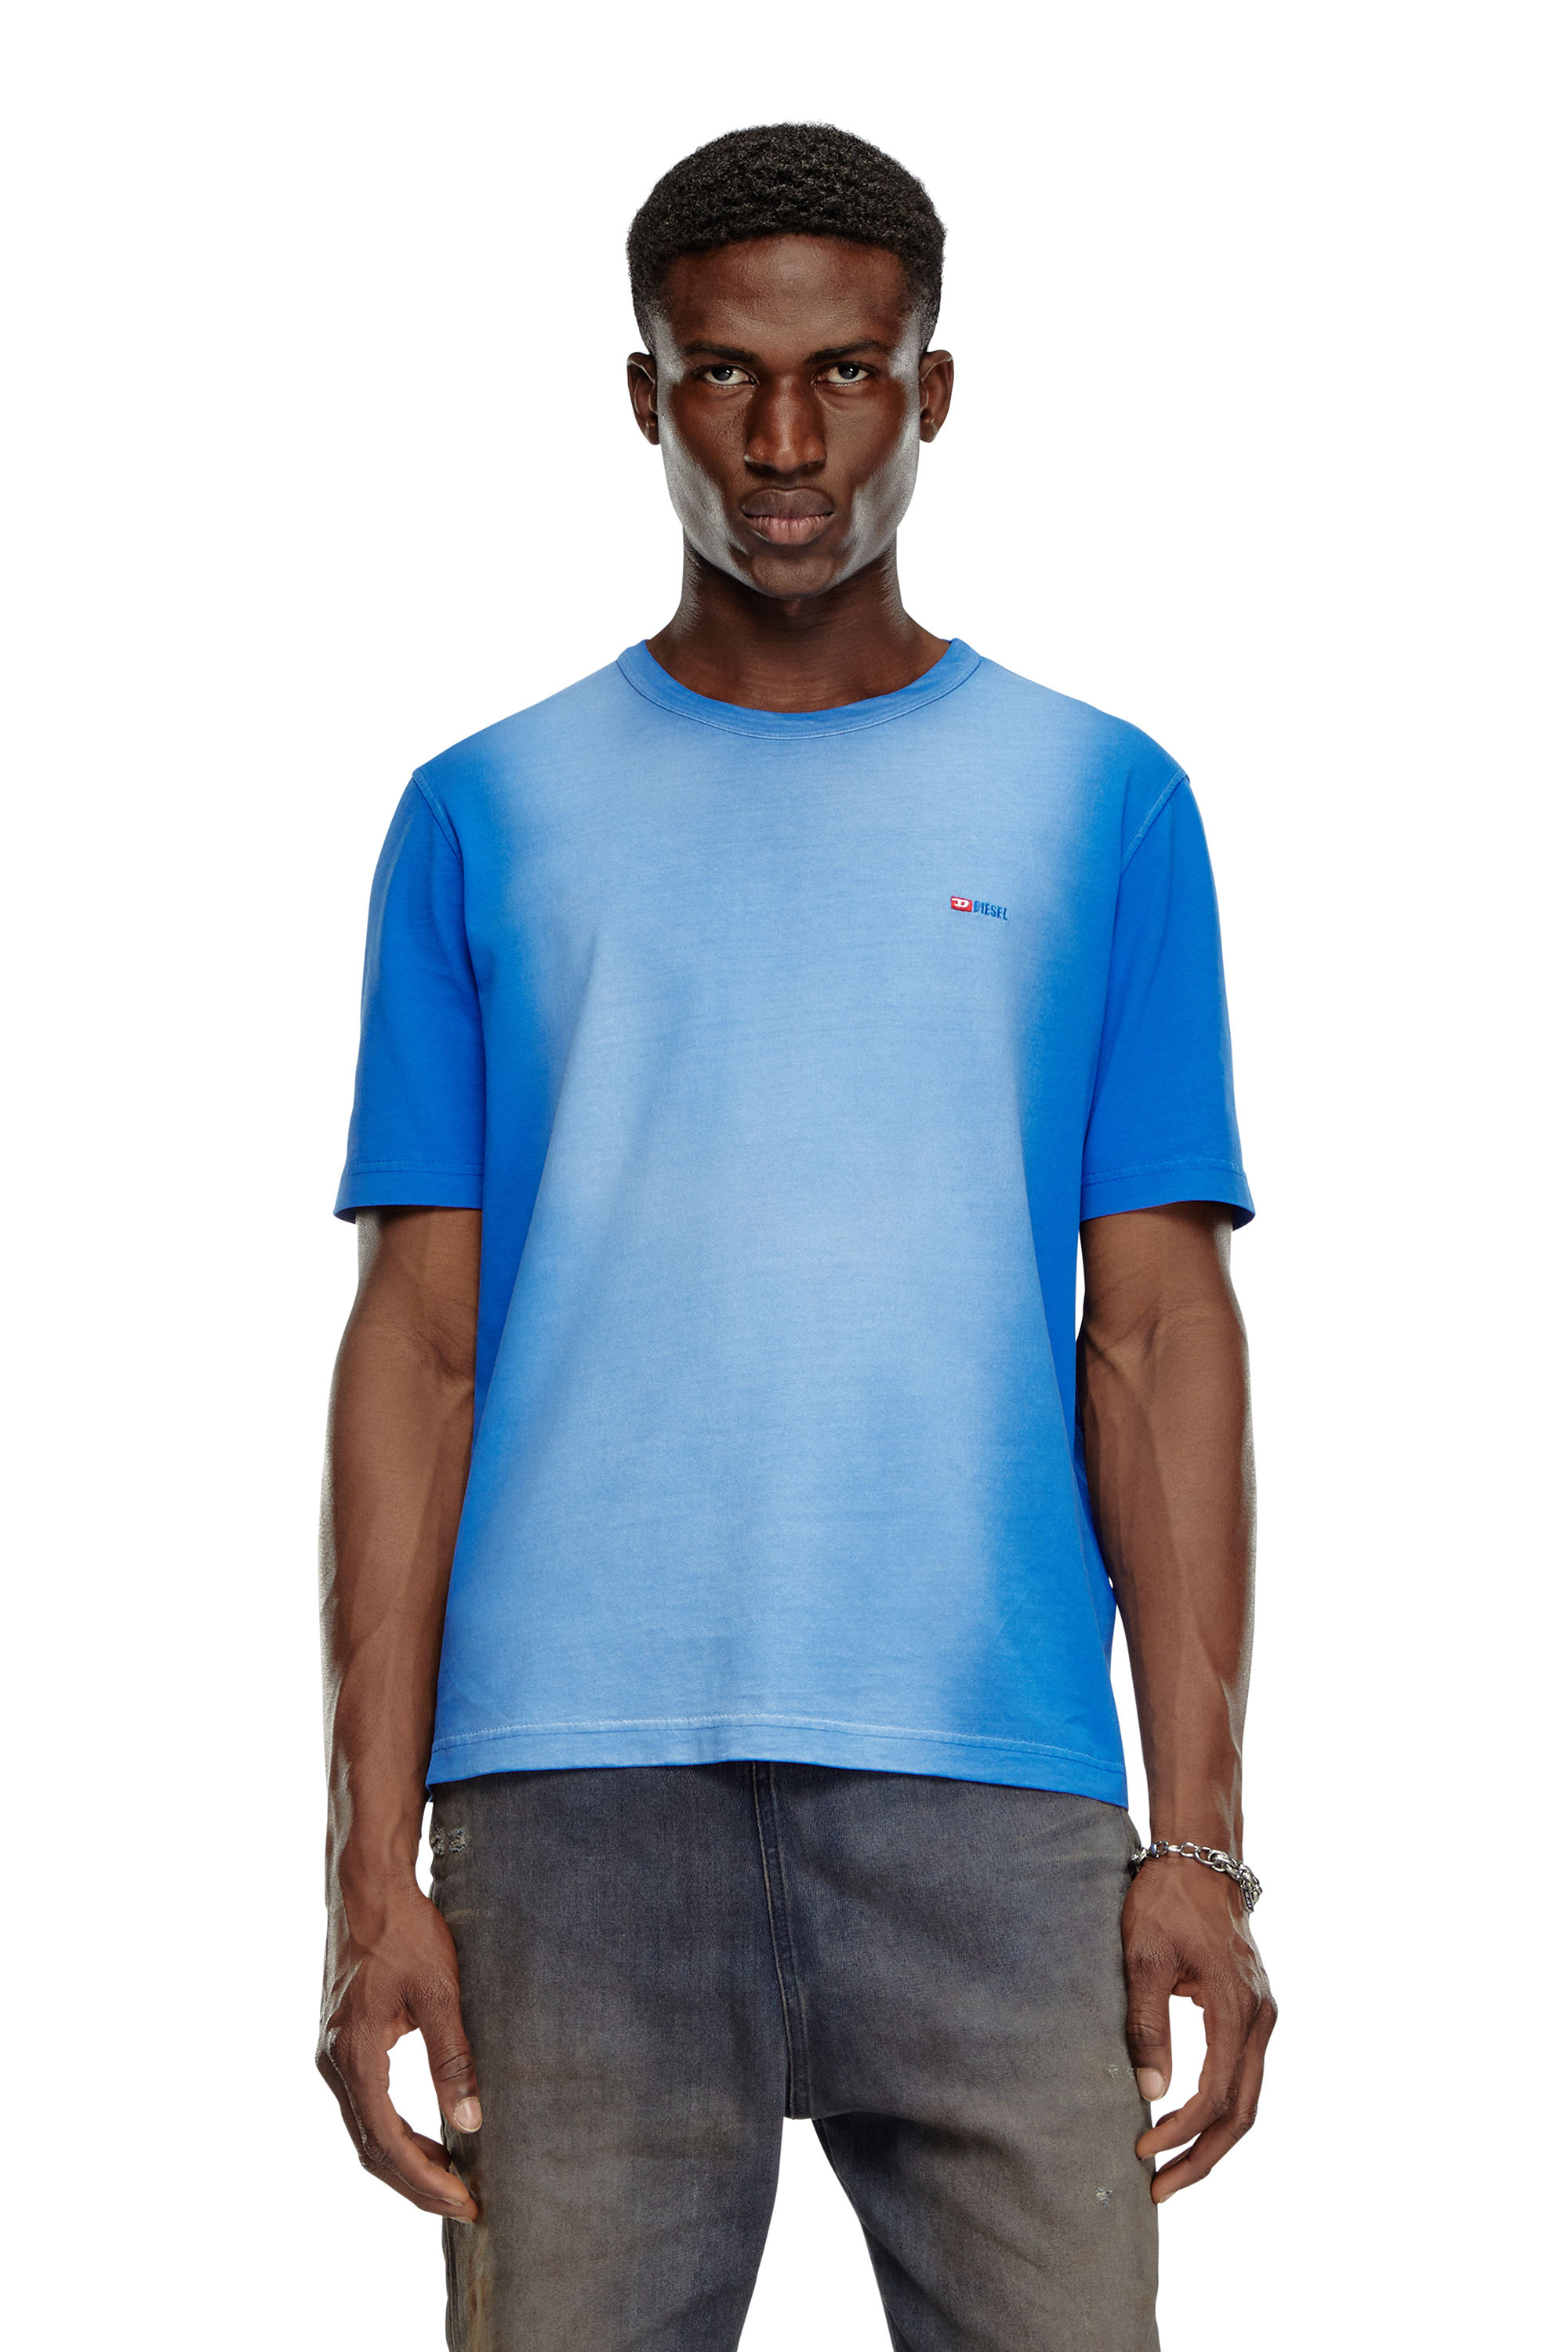 Diesel - Camiseta en tejido de algodón rociado - Camisetas - Hombre - Azul marino